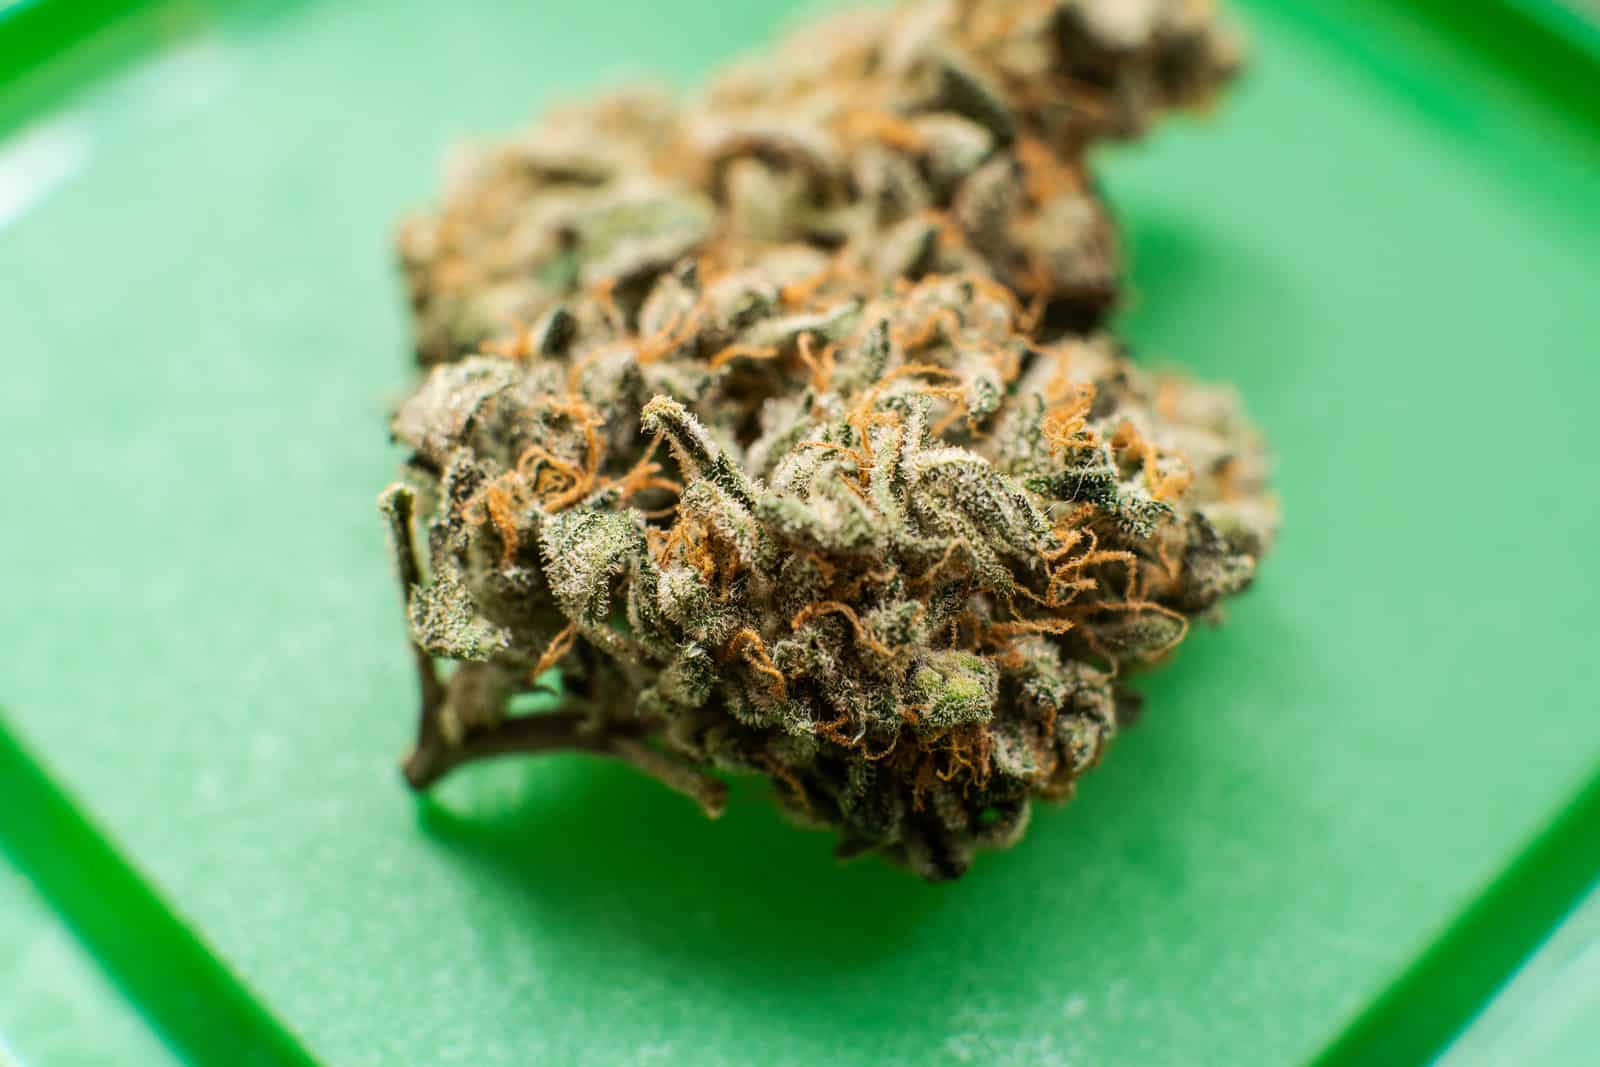 Is Cannabis Legal in Hawaii? Closeup of a cannabis bud.